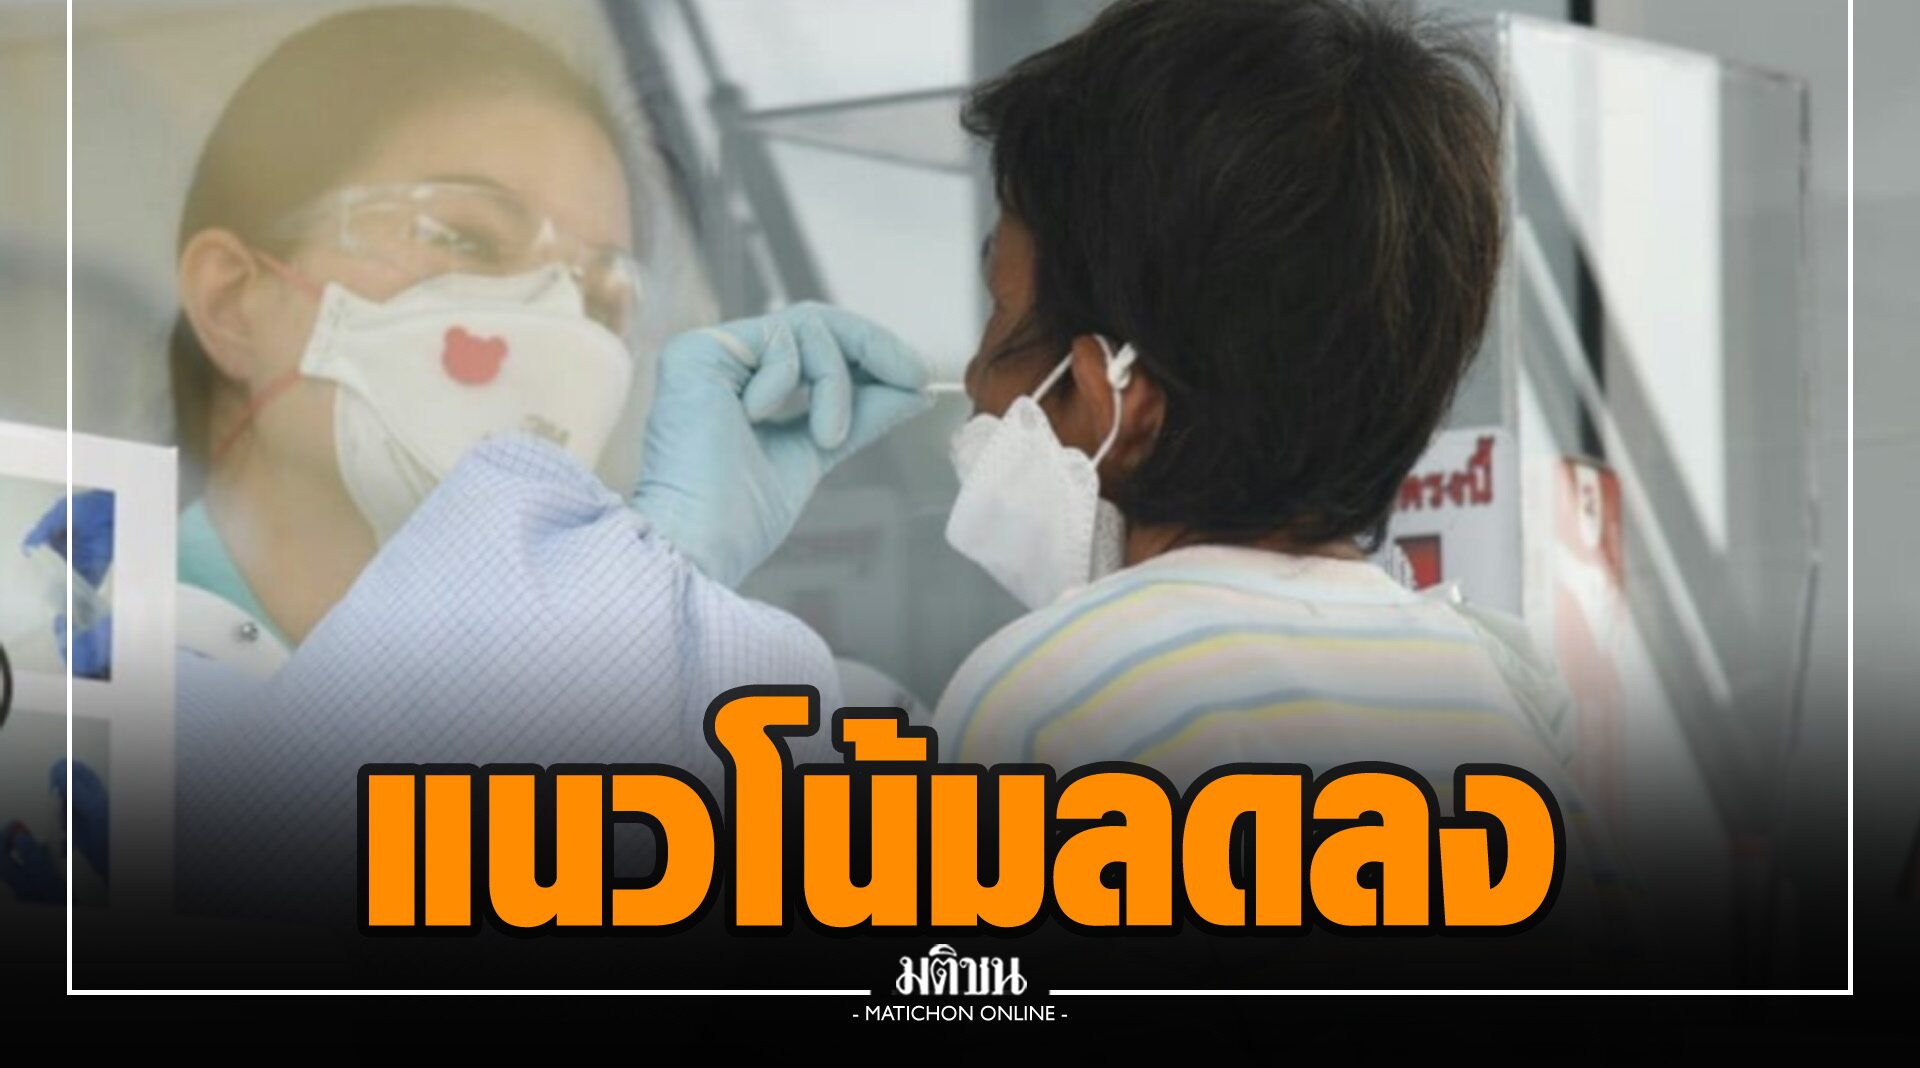 ผลตรวจ ATK ชี้กรุงเทพฯ โควิดมีแนวโน้มลดลง ทีม Bangkok CCRT ค้นหาผู้ป่วยในชุมชนต่อเนื่อง